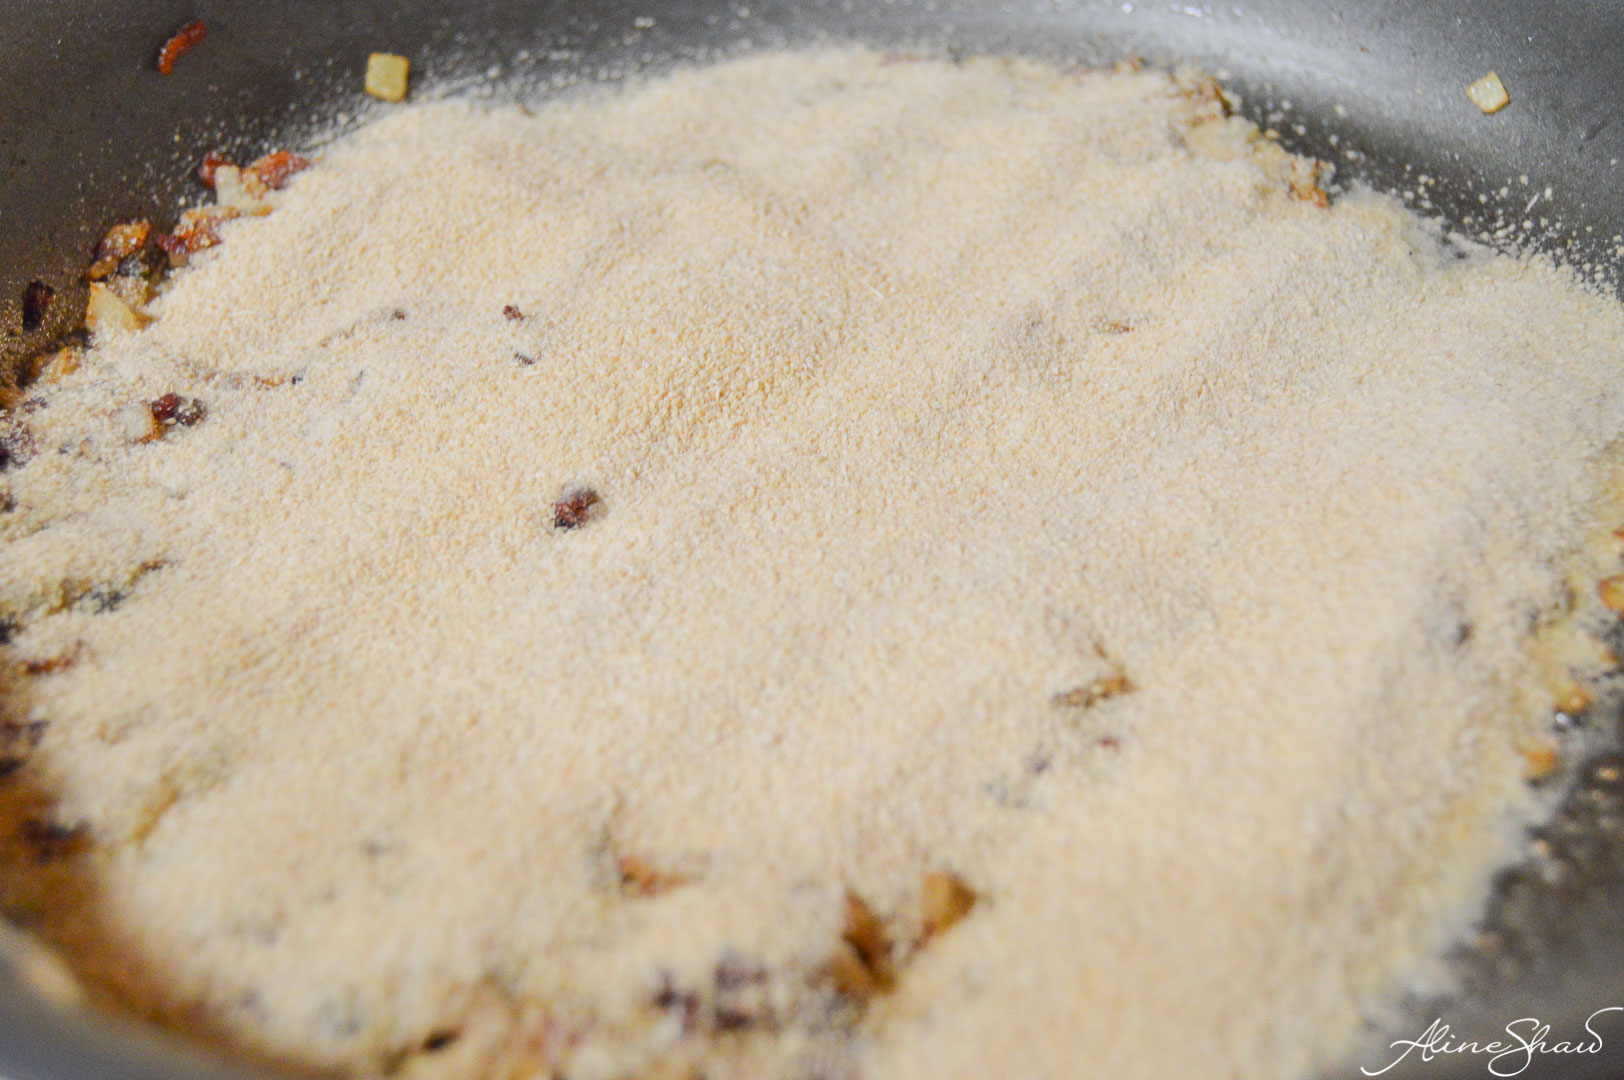 Farofa - Toasted Cassava Flour Recipe